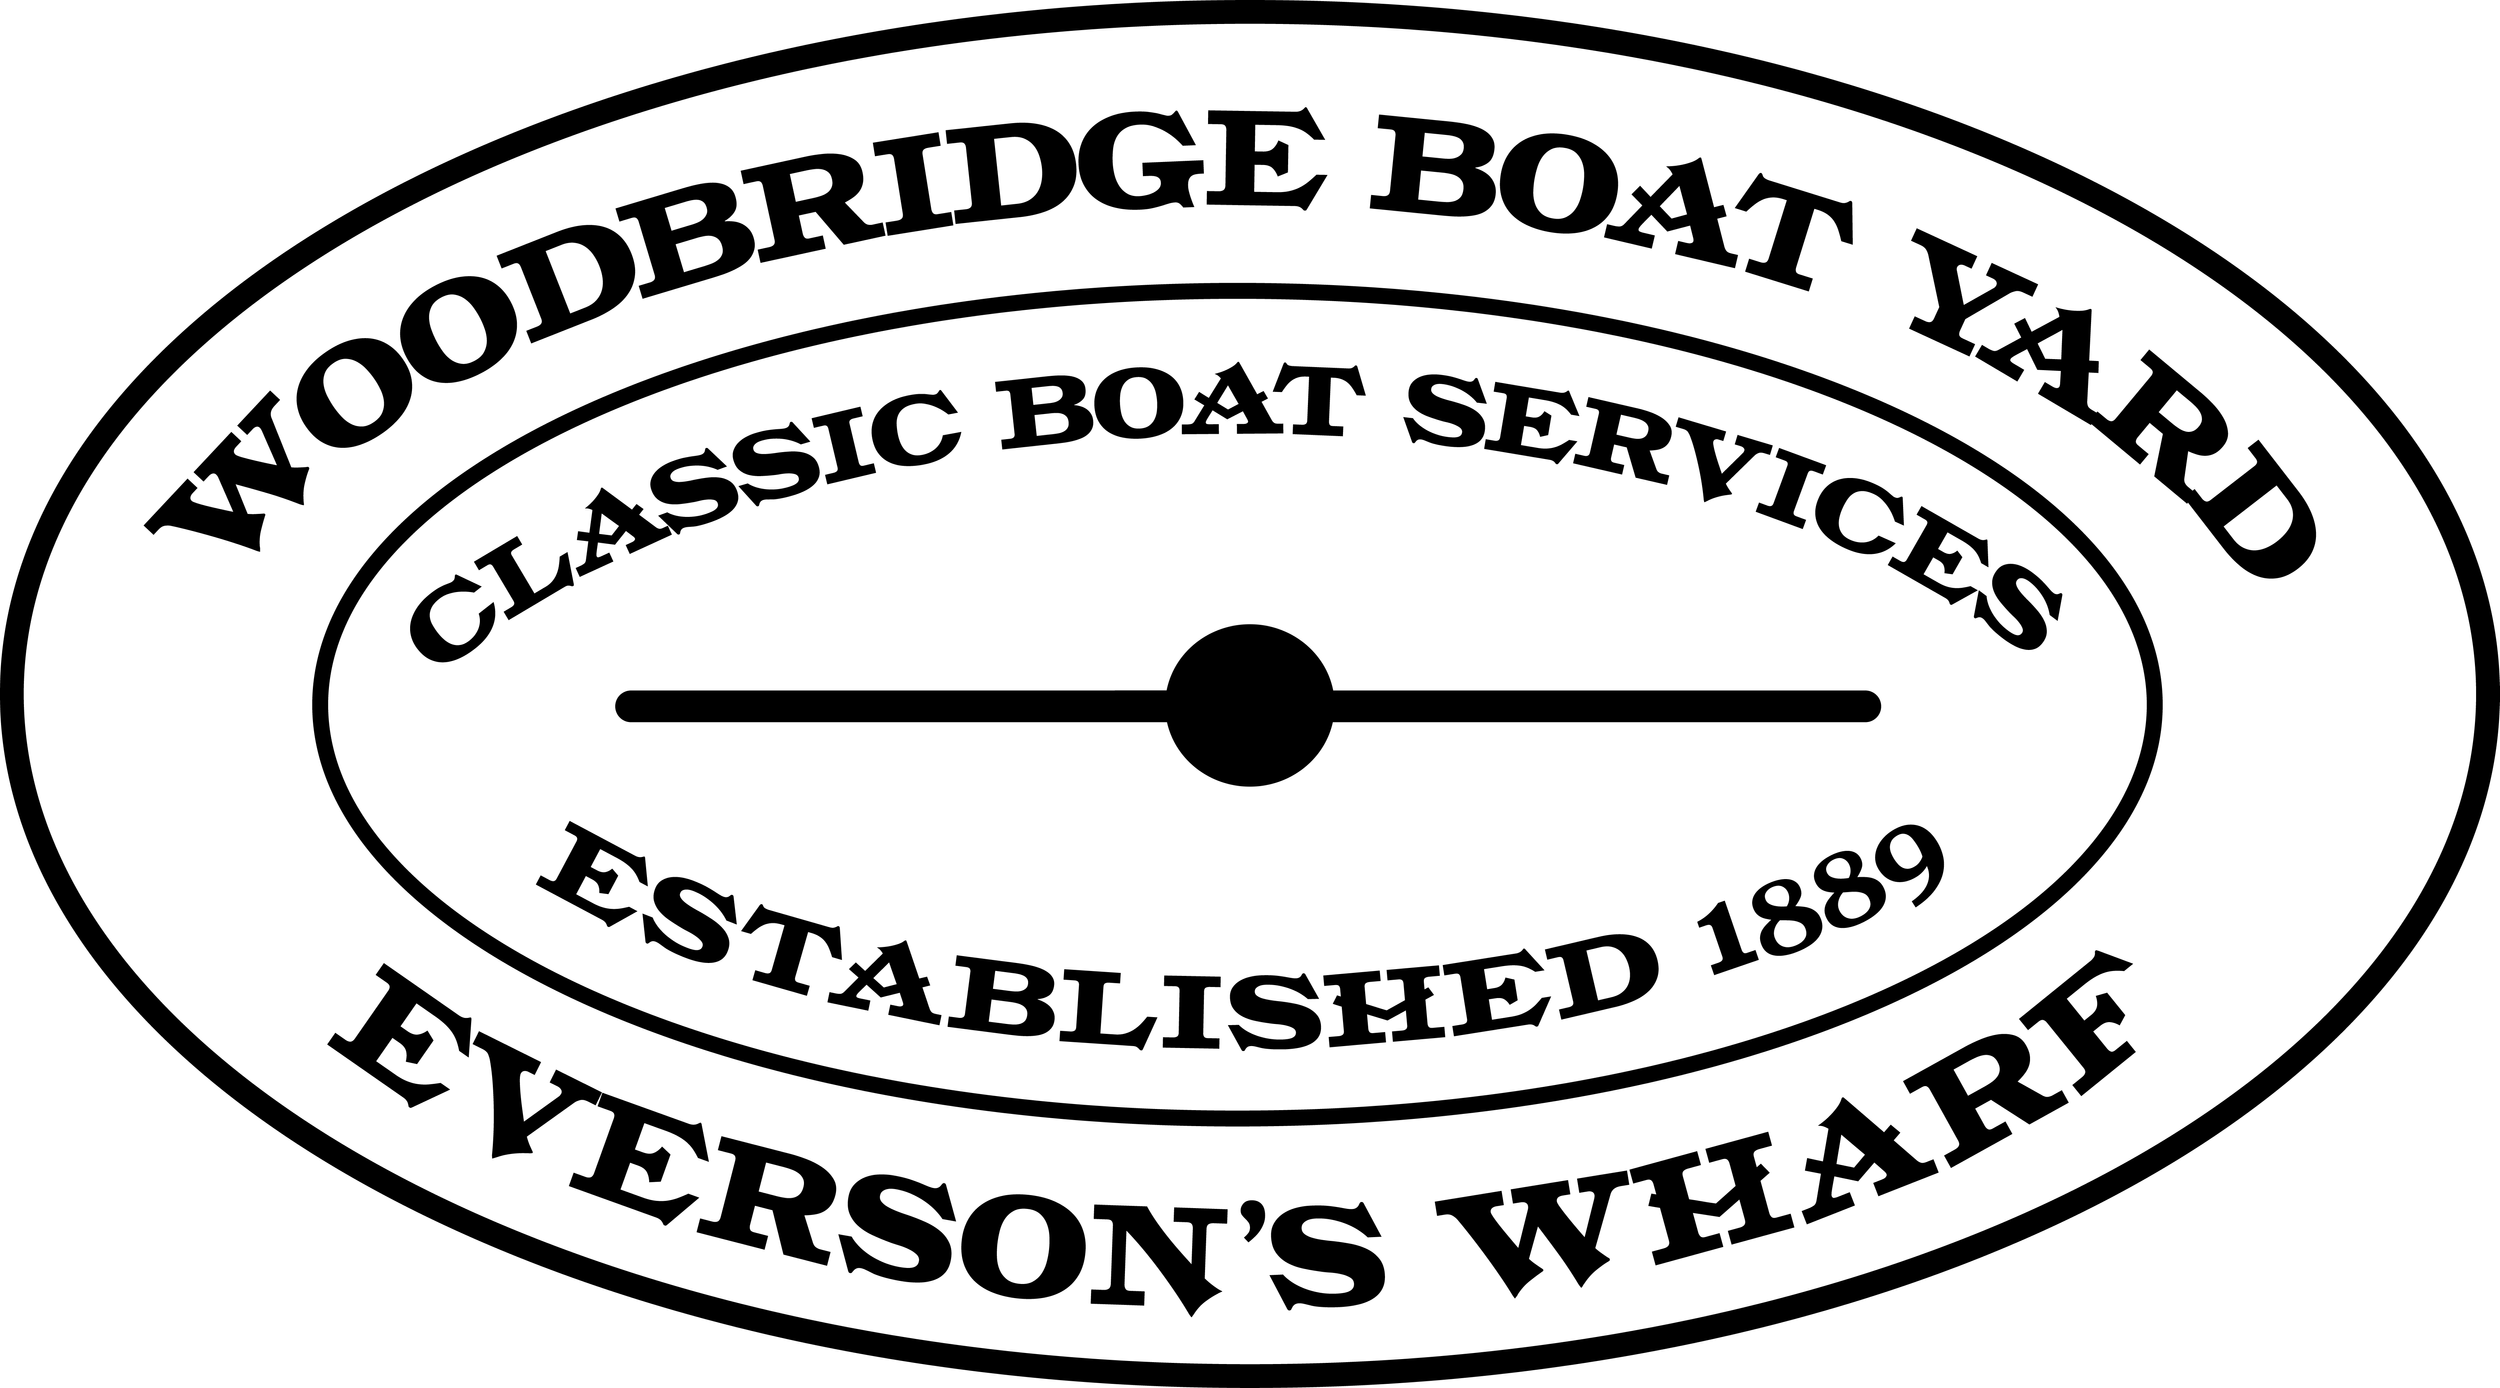 Woodbridge Boatyard